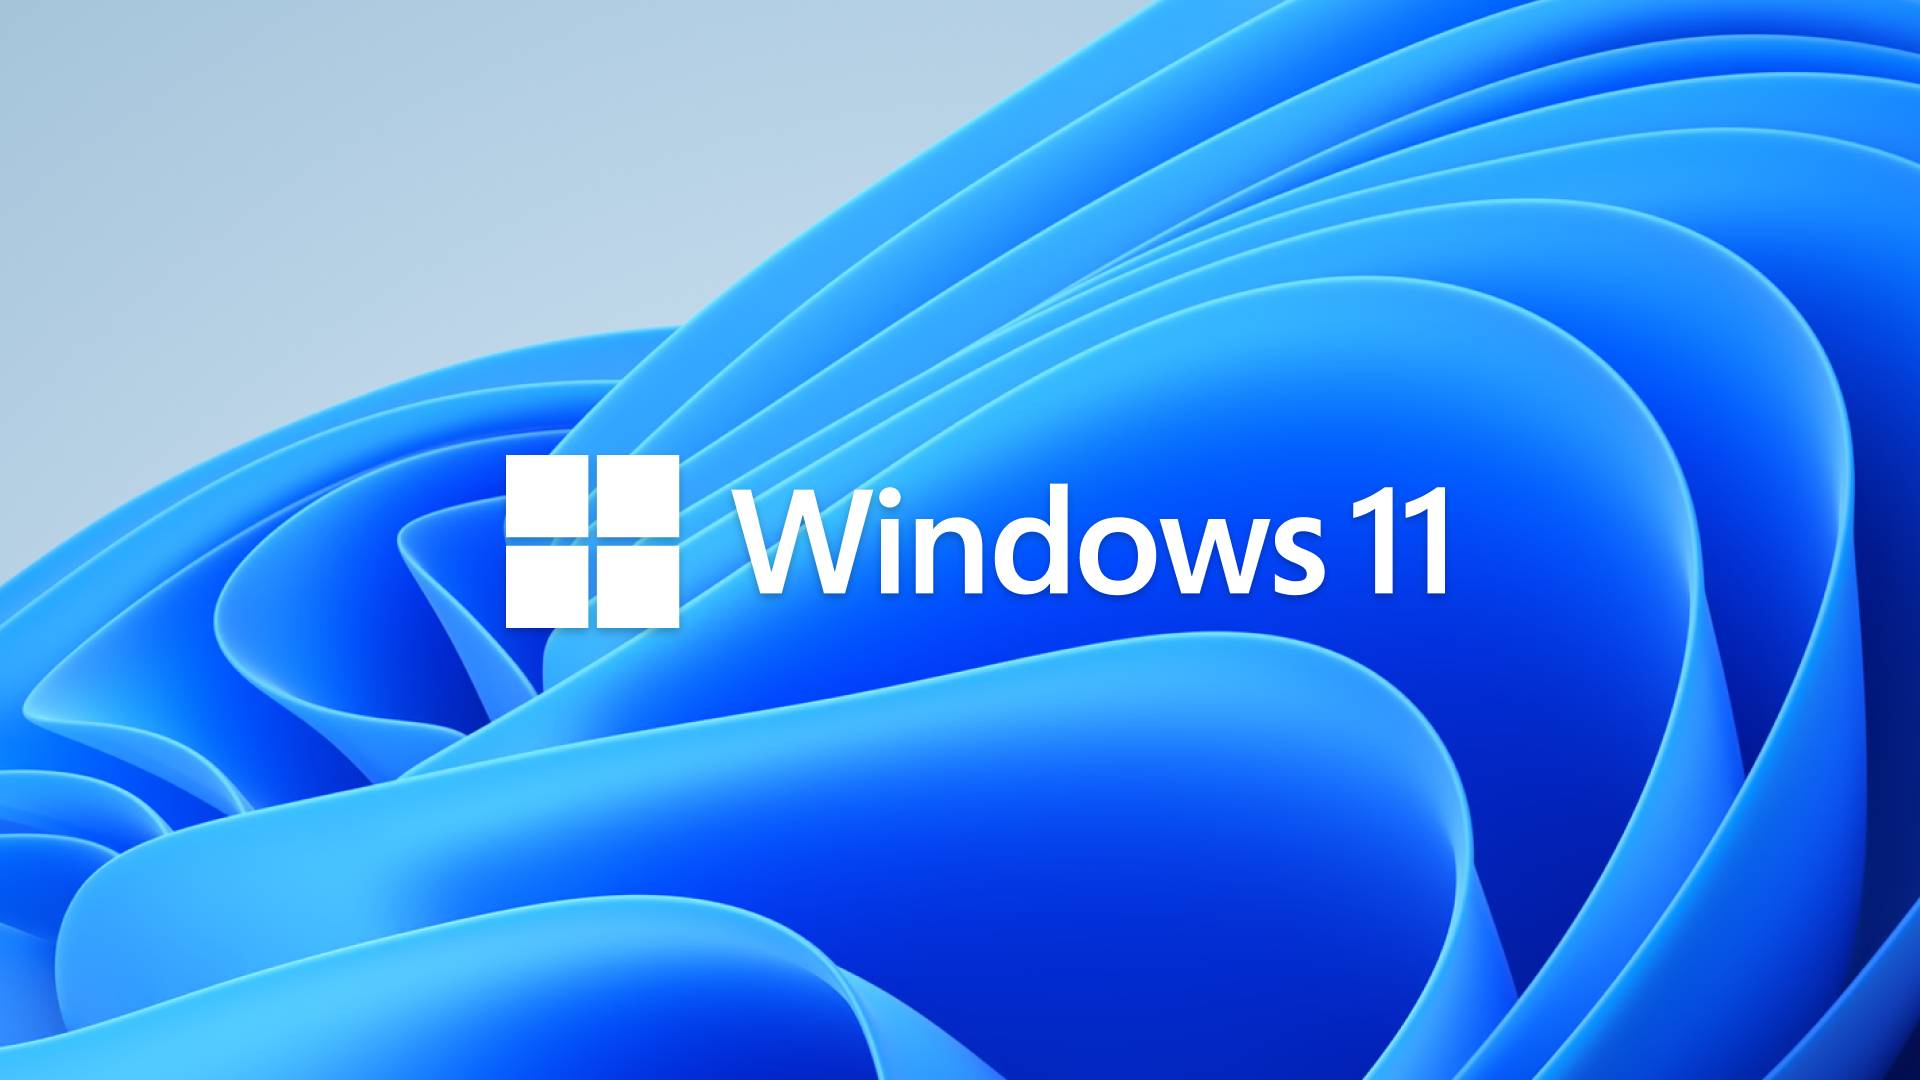 Microsoft KRITIIVISTI ankaraa syytä Windows 11 reagoi virallisiin toimenpiteisiin